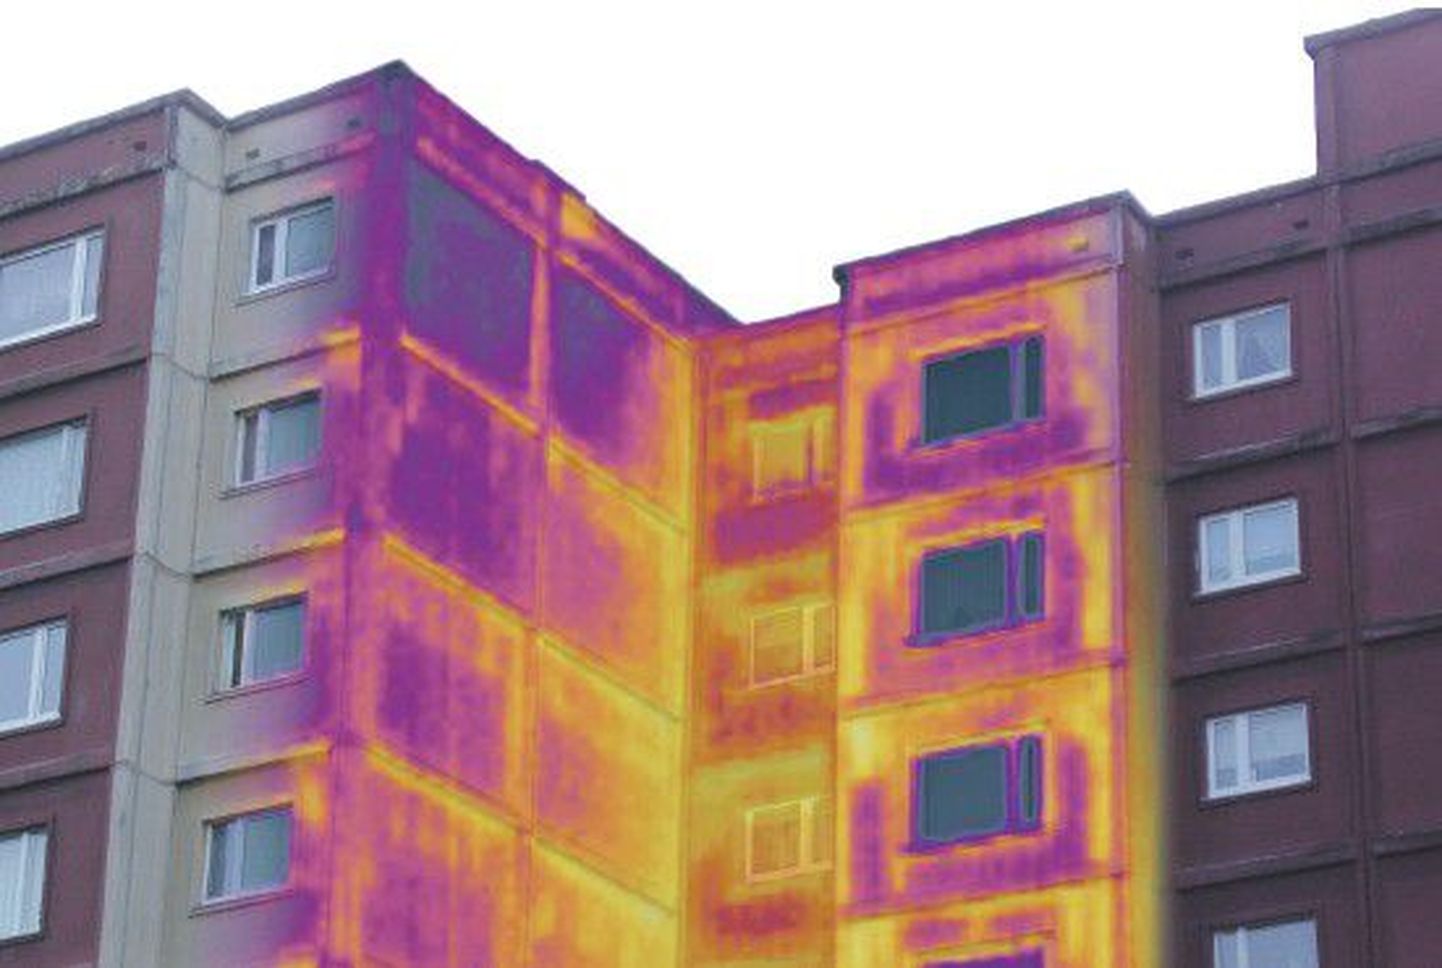 KredEx предлагает гарантии по кредитам на ремонт для улучшения энергосбережения. 
Изображение термокамеры показывает, что теплоизоляция этого многоквартирного дома несовершенна.